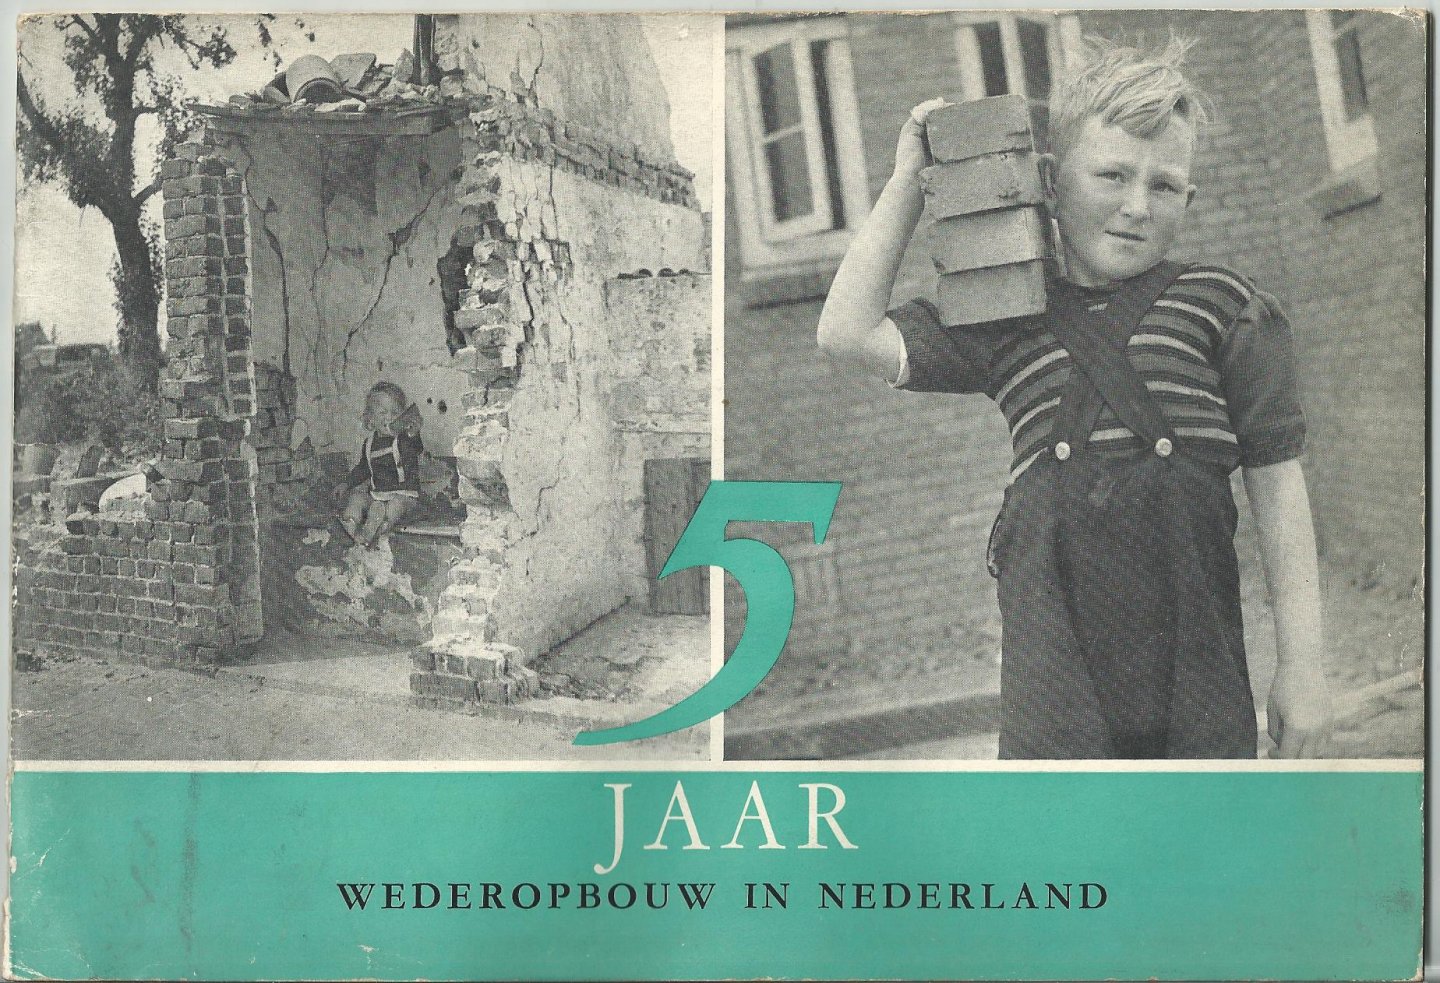 Veld, Joris in 't (voorwoord, Minister van Volkshuisvesting en Wederopbouw in het kabinet Drees-Van Schaik, 1948-1951) - 5 jaar Wederopbouw in Nederland